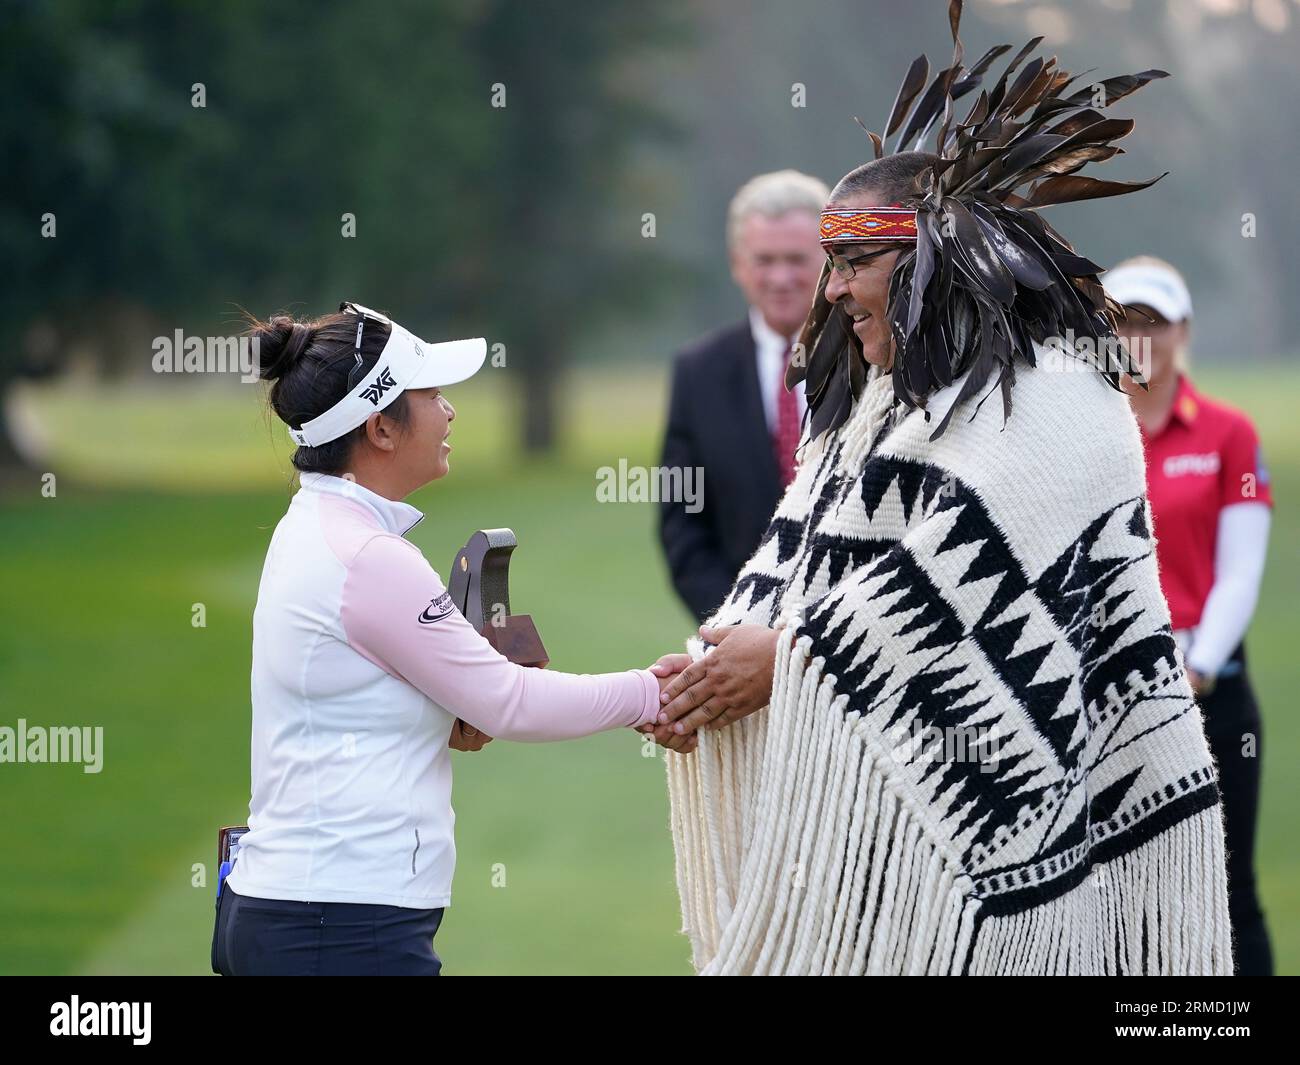 Megan Khang riceve una scultura dalla band indiana Musqueam Chief Wayne Sparrow dopo la sua vittoria al LPGA CPKC 2023 Women's Open, allo Shaughnessy Golf and Country Club di Vancouver, British Columbia, il 27 agosto 2023. Foto Stock